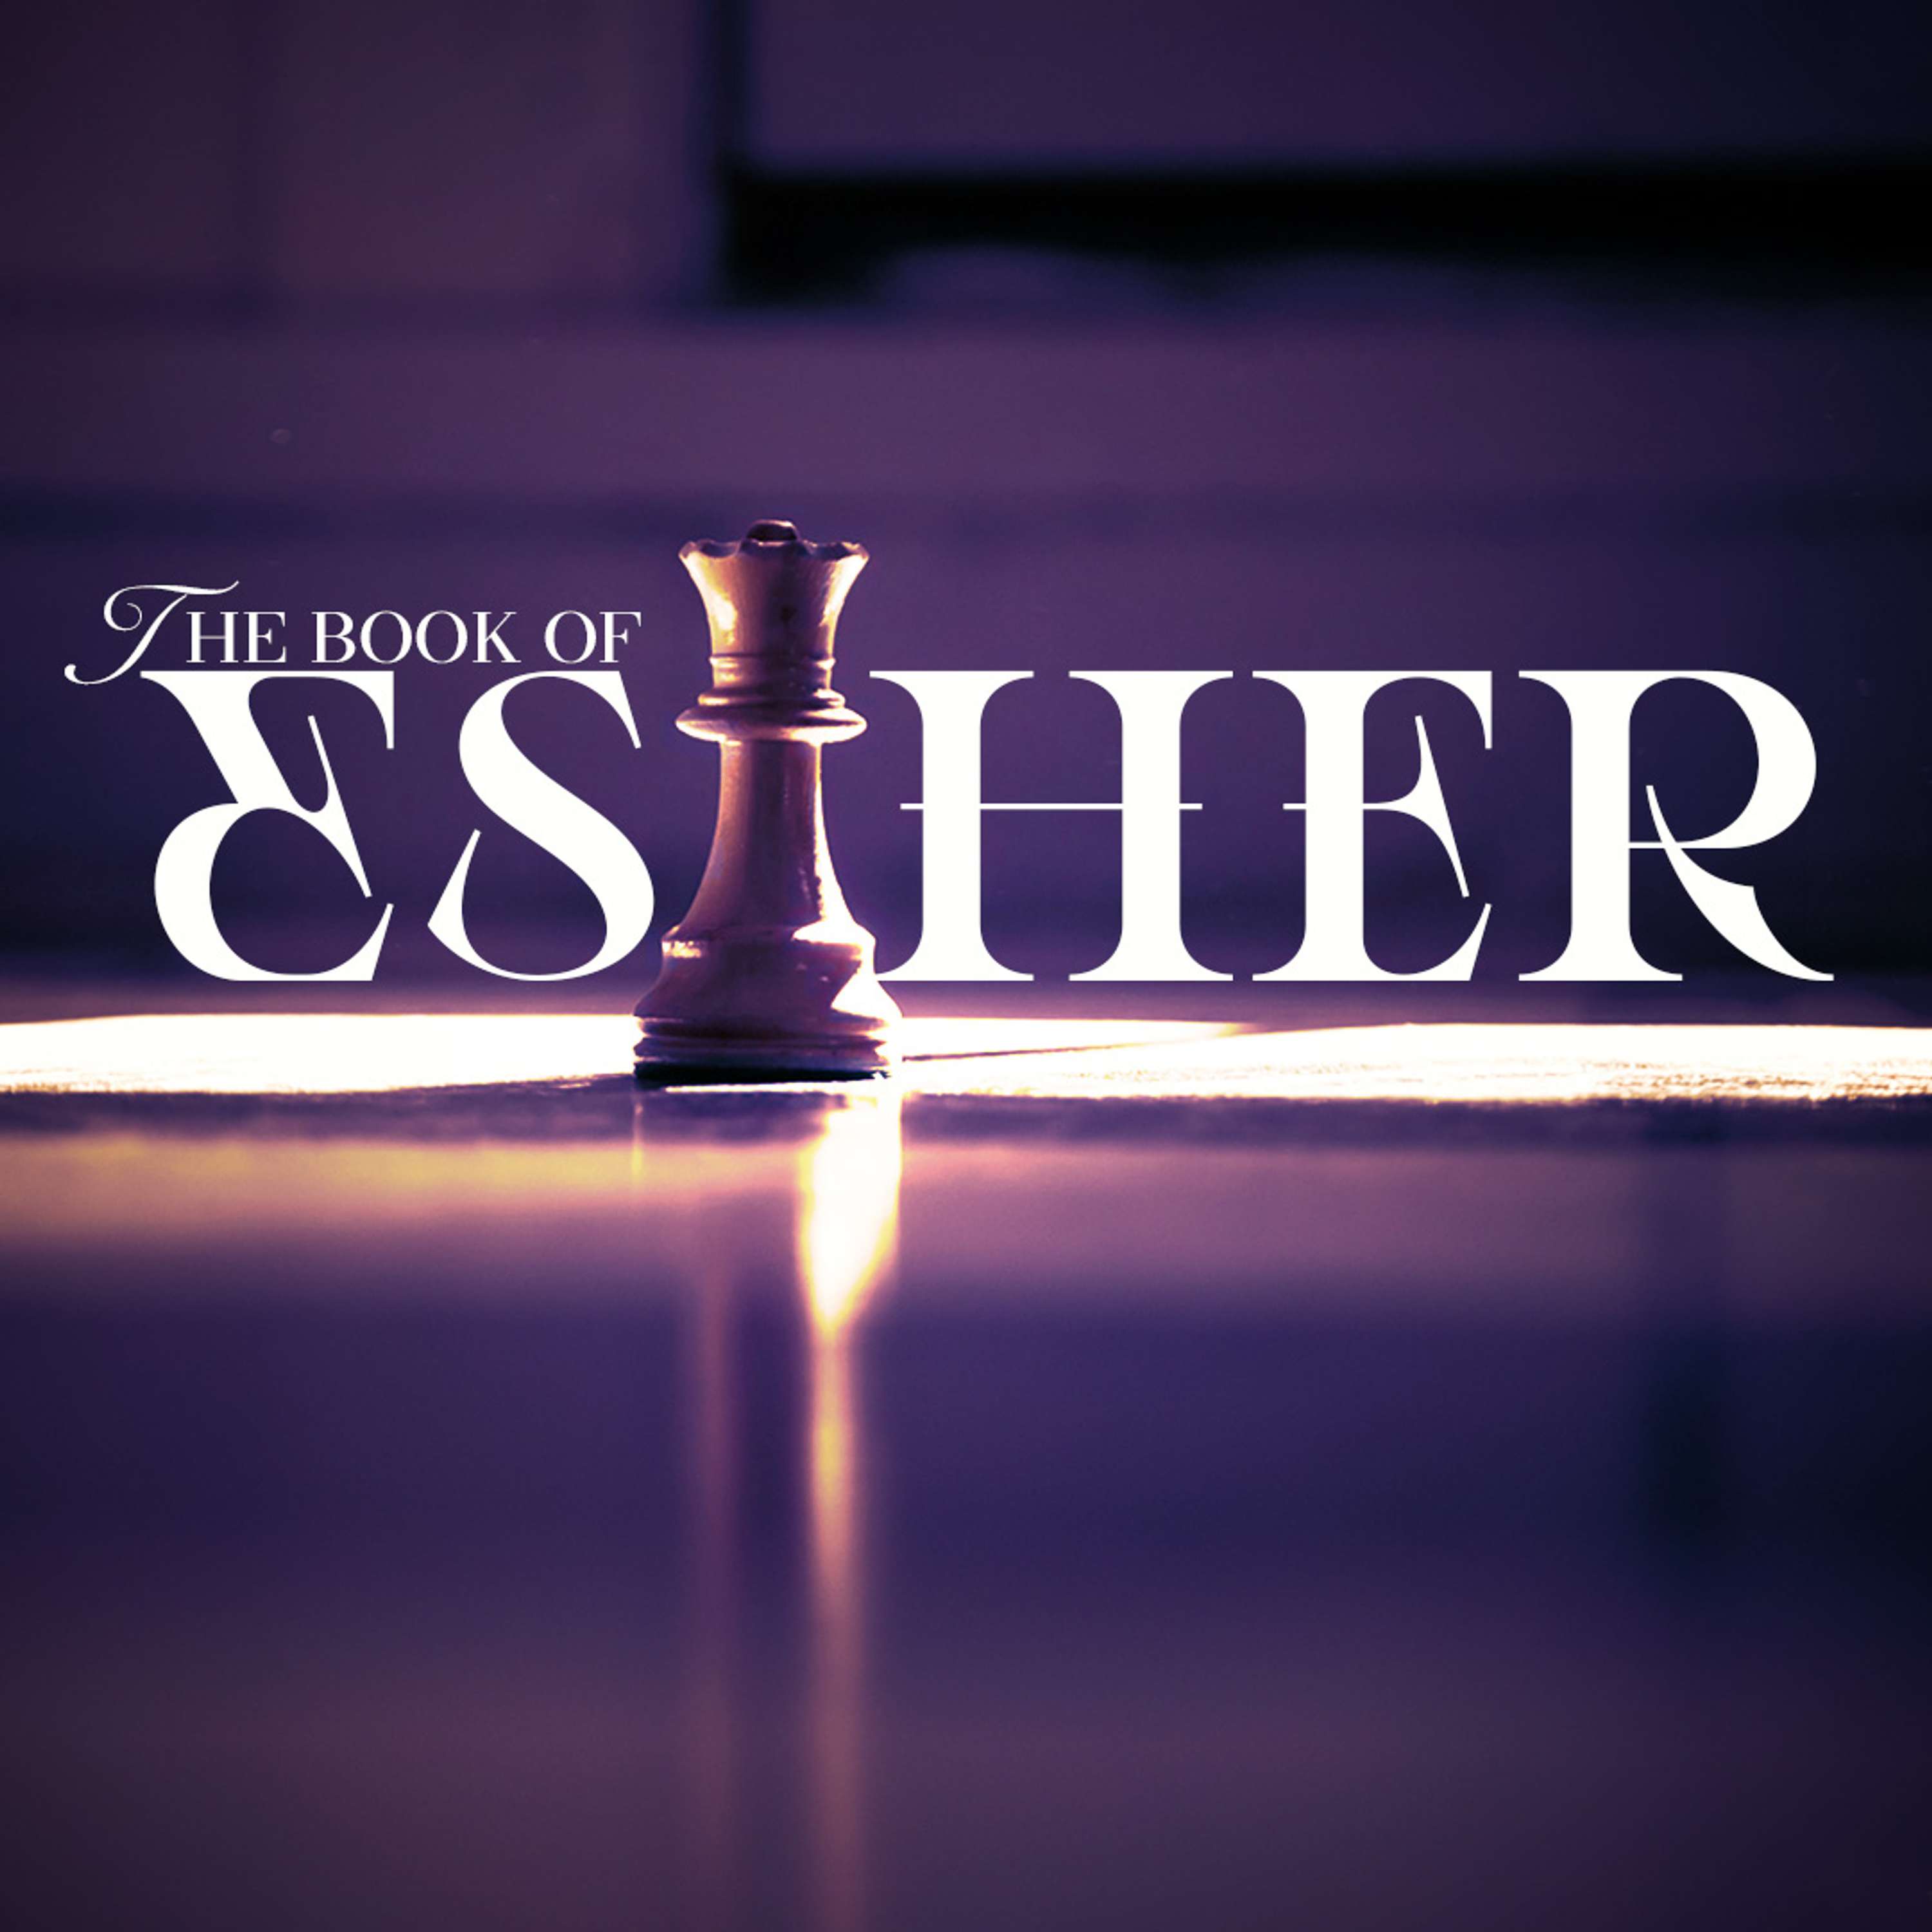 GVL - Esther - "Responding in Faith"